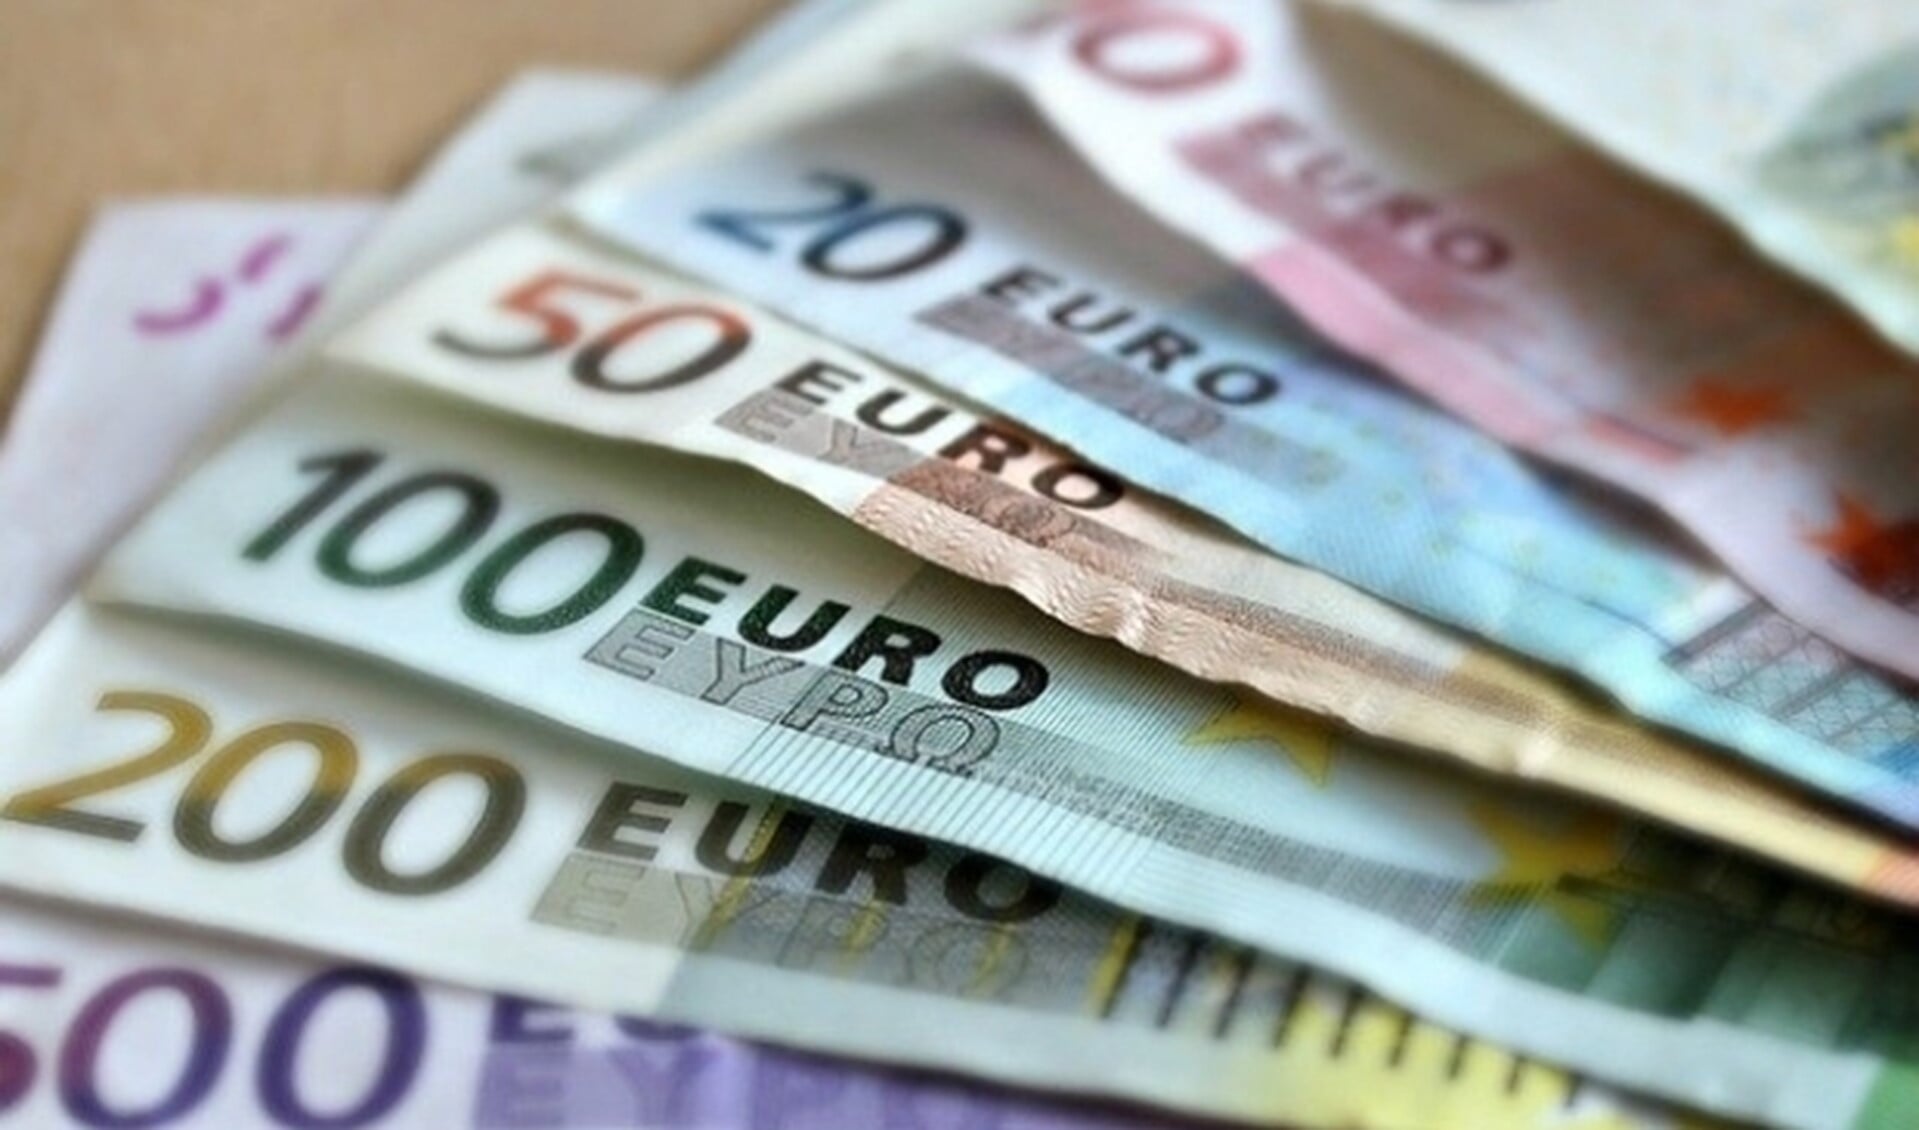 Euro's.